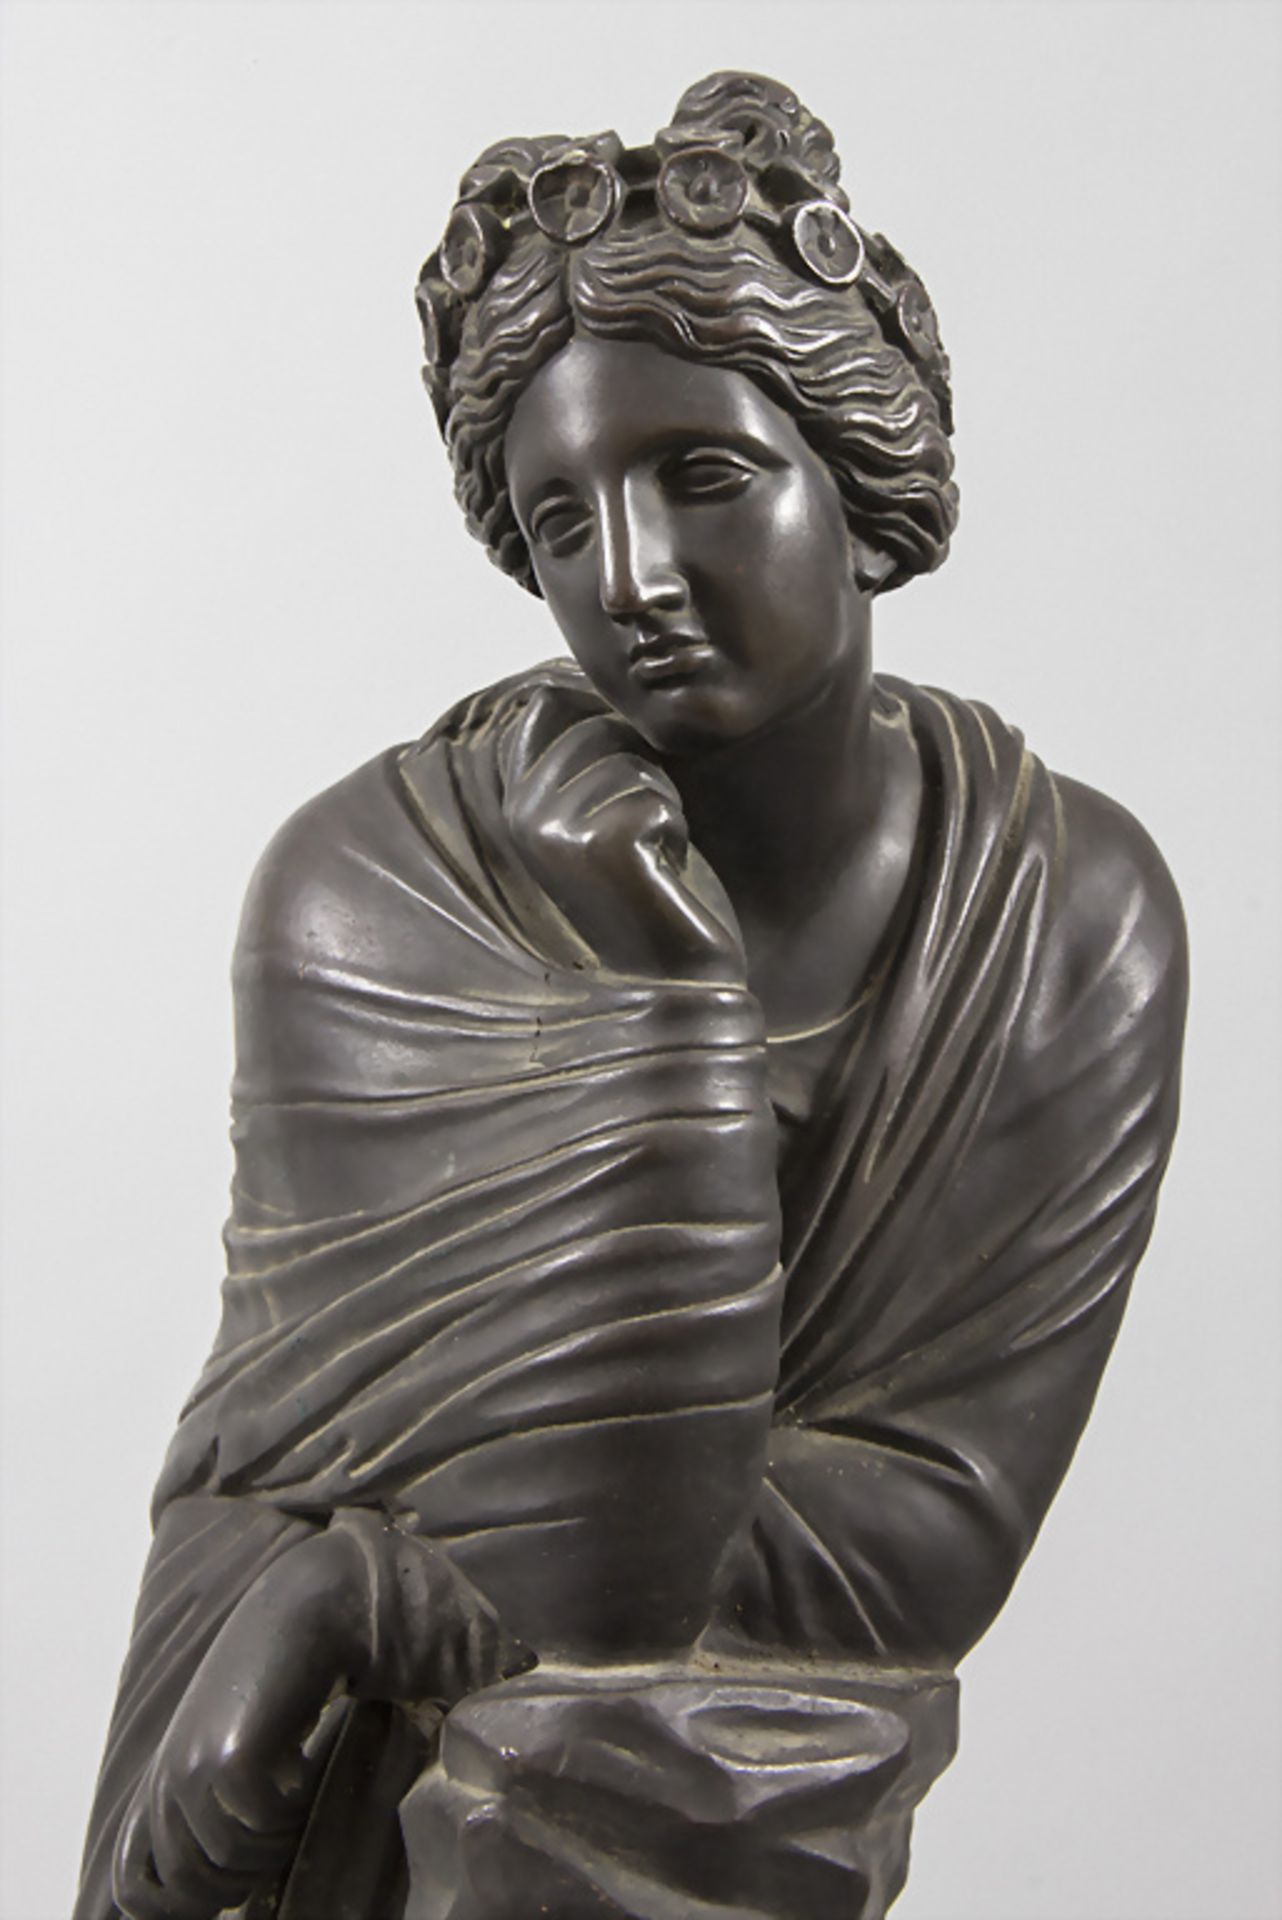 Ferdinand BARBEDIENNE (1810-1892), Griechische Göttin / A bronze sculpture of a Greek goddess - Image 5 of 8